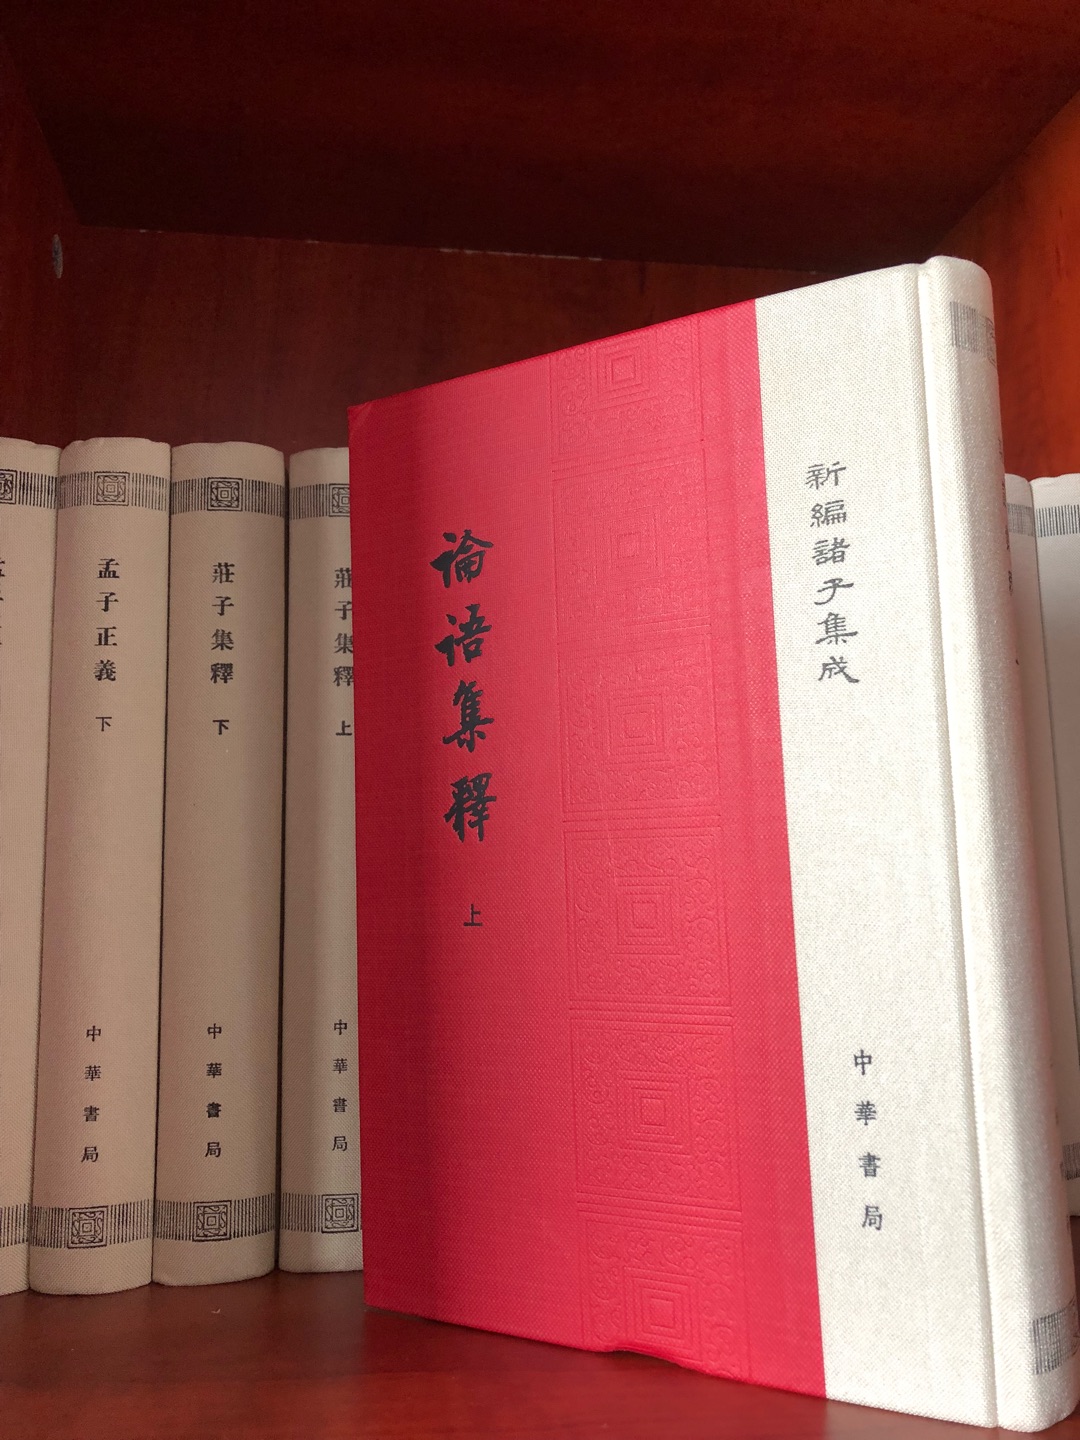 感谢中华书局的这一项功德无量的的出版工作，一个民族之所以有前途，来自于对过去历史文化的传承，满意。